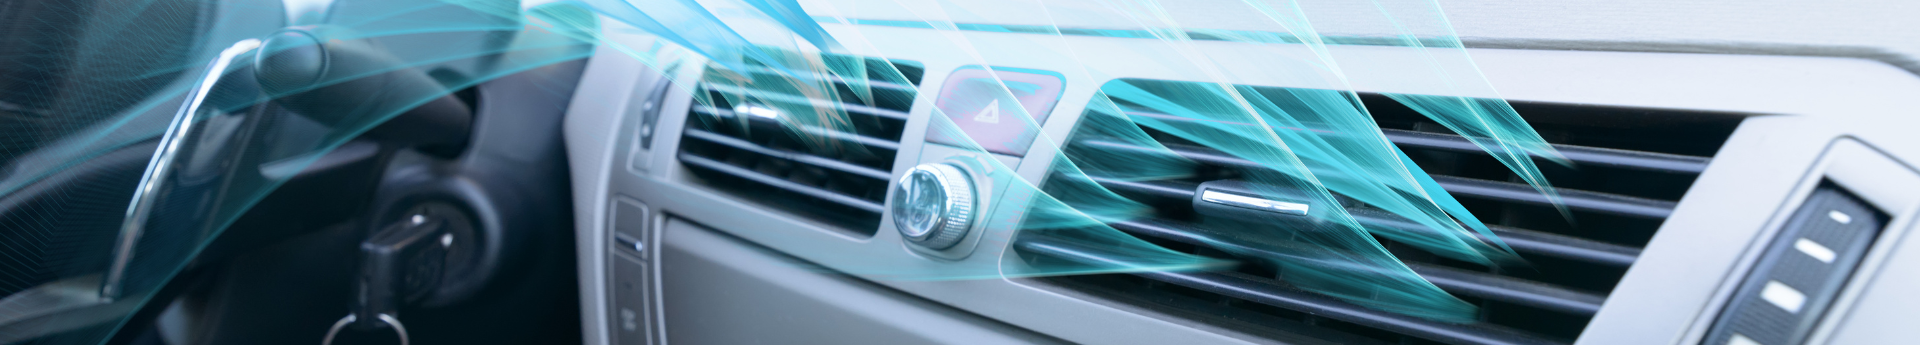 La climatisation de votre véhicule : bons plans et astuces pour son entretien